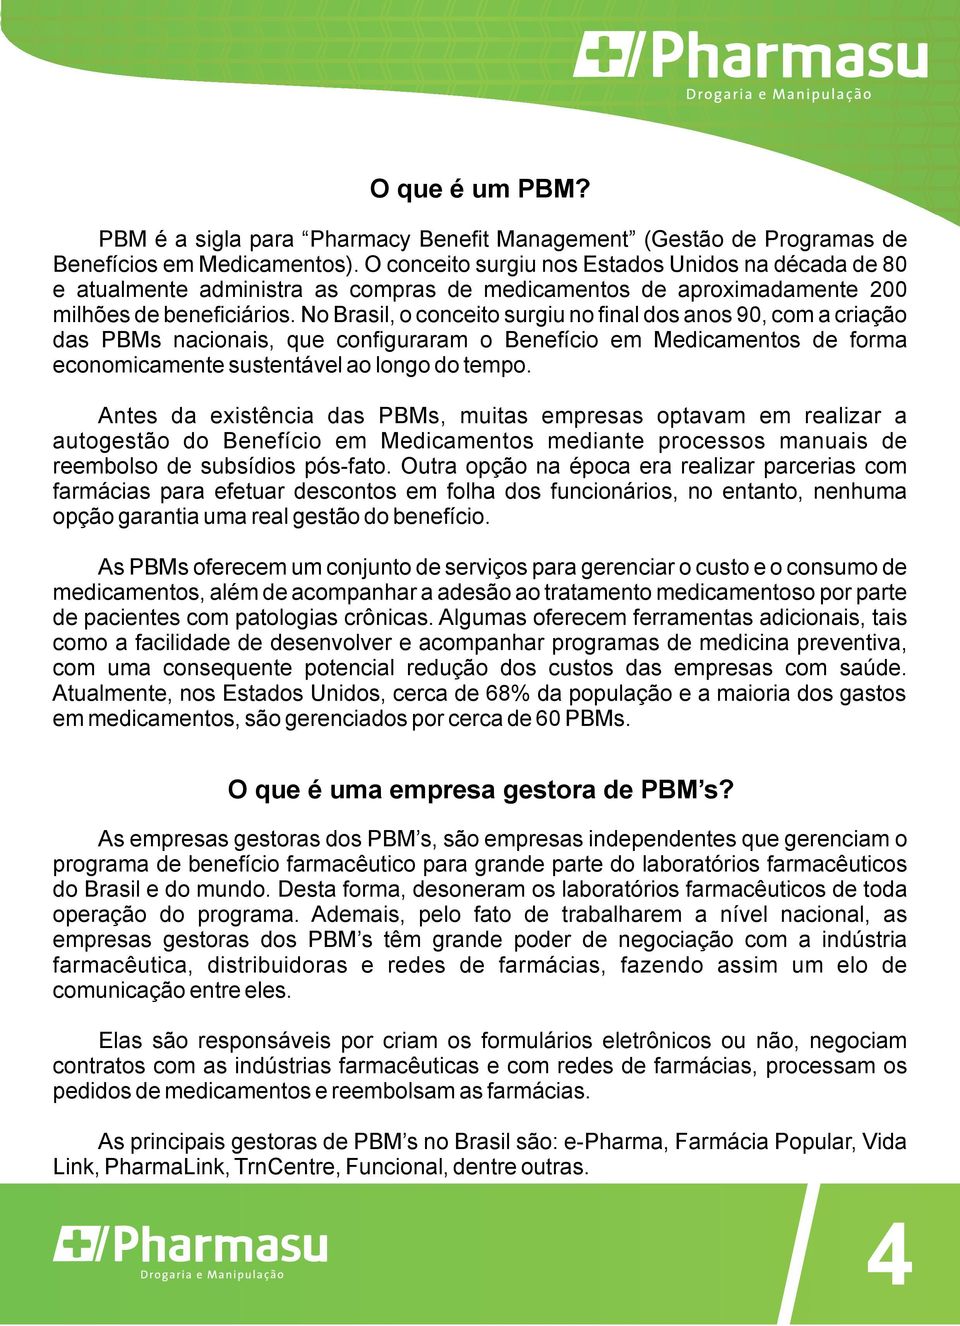 No Brasil, o conceito surgiu no final dos anos 90, com a criação das PBMs nacionais, que configuraram o Benefício em Medicamentos de forma economicamente sustentável ao longo do tempo.